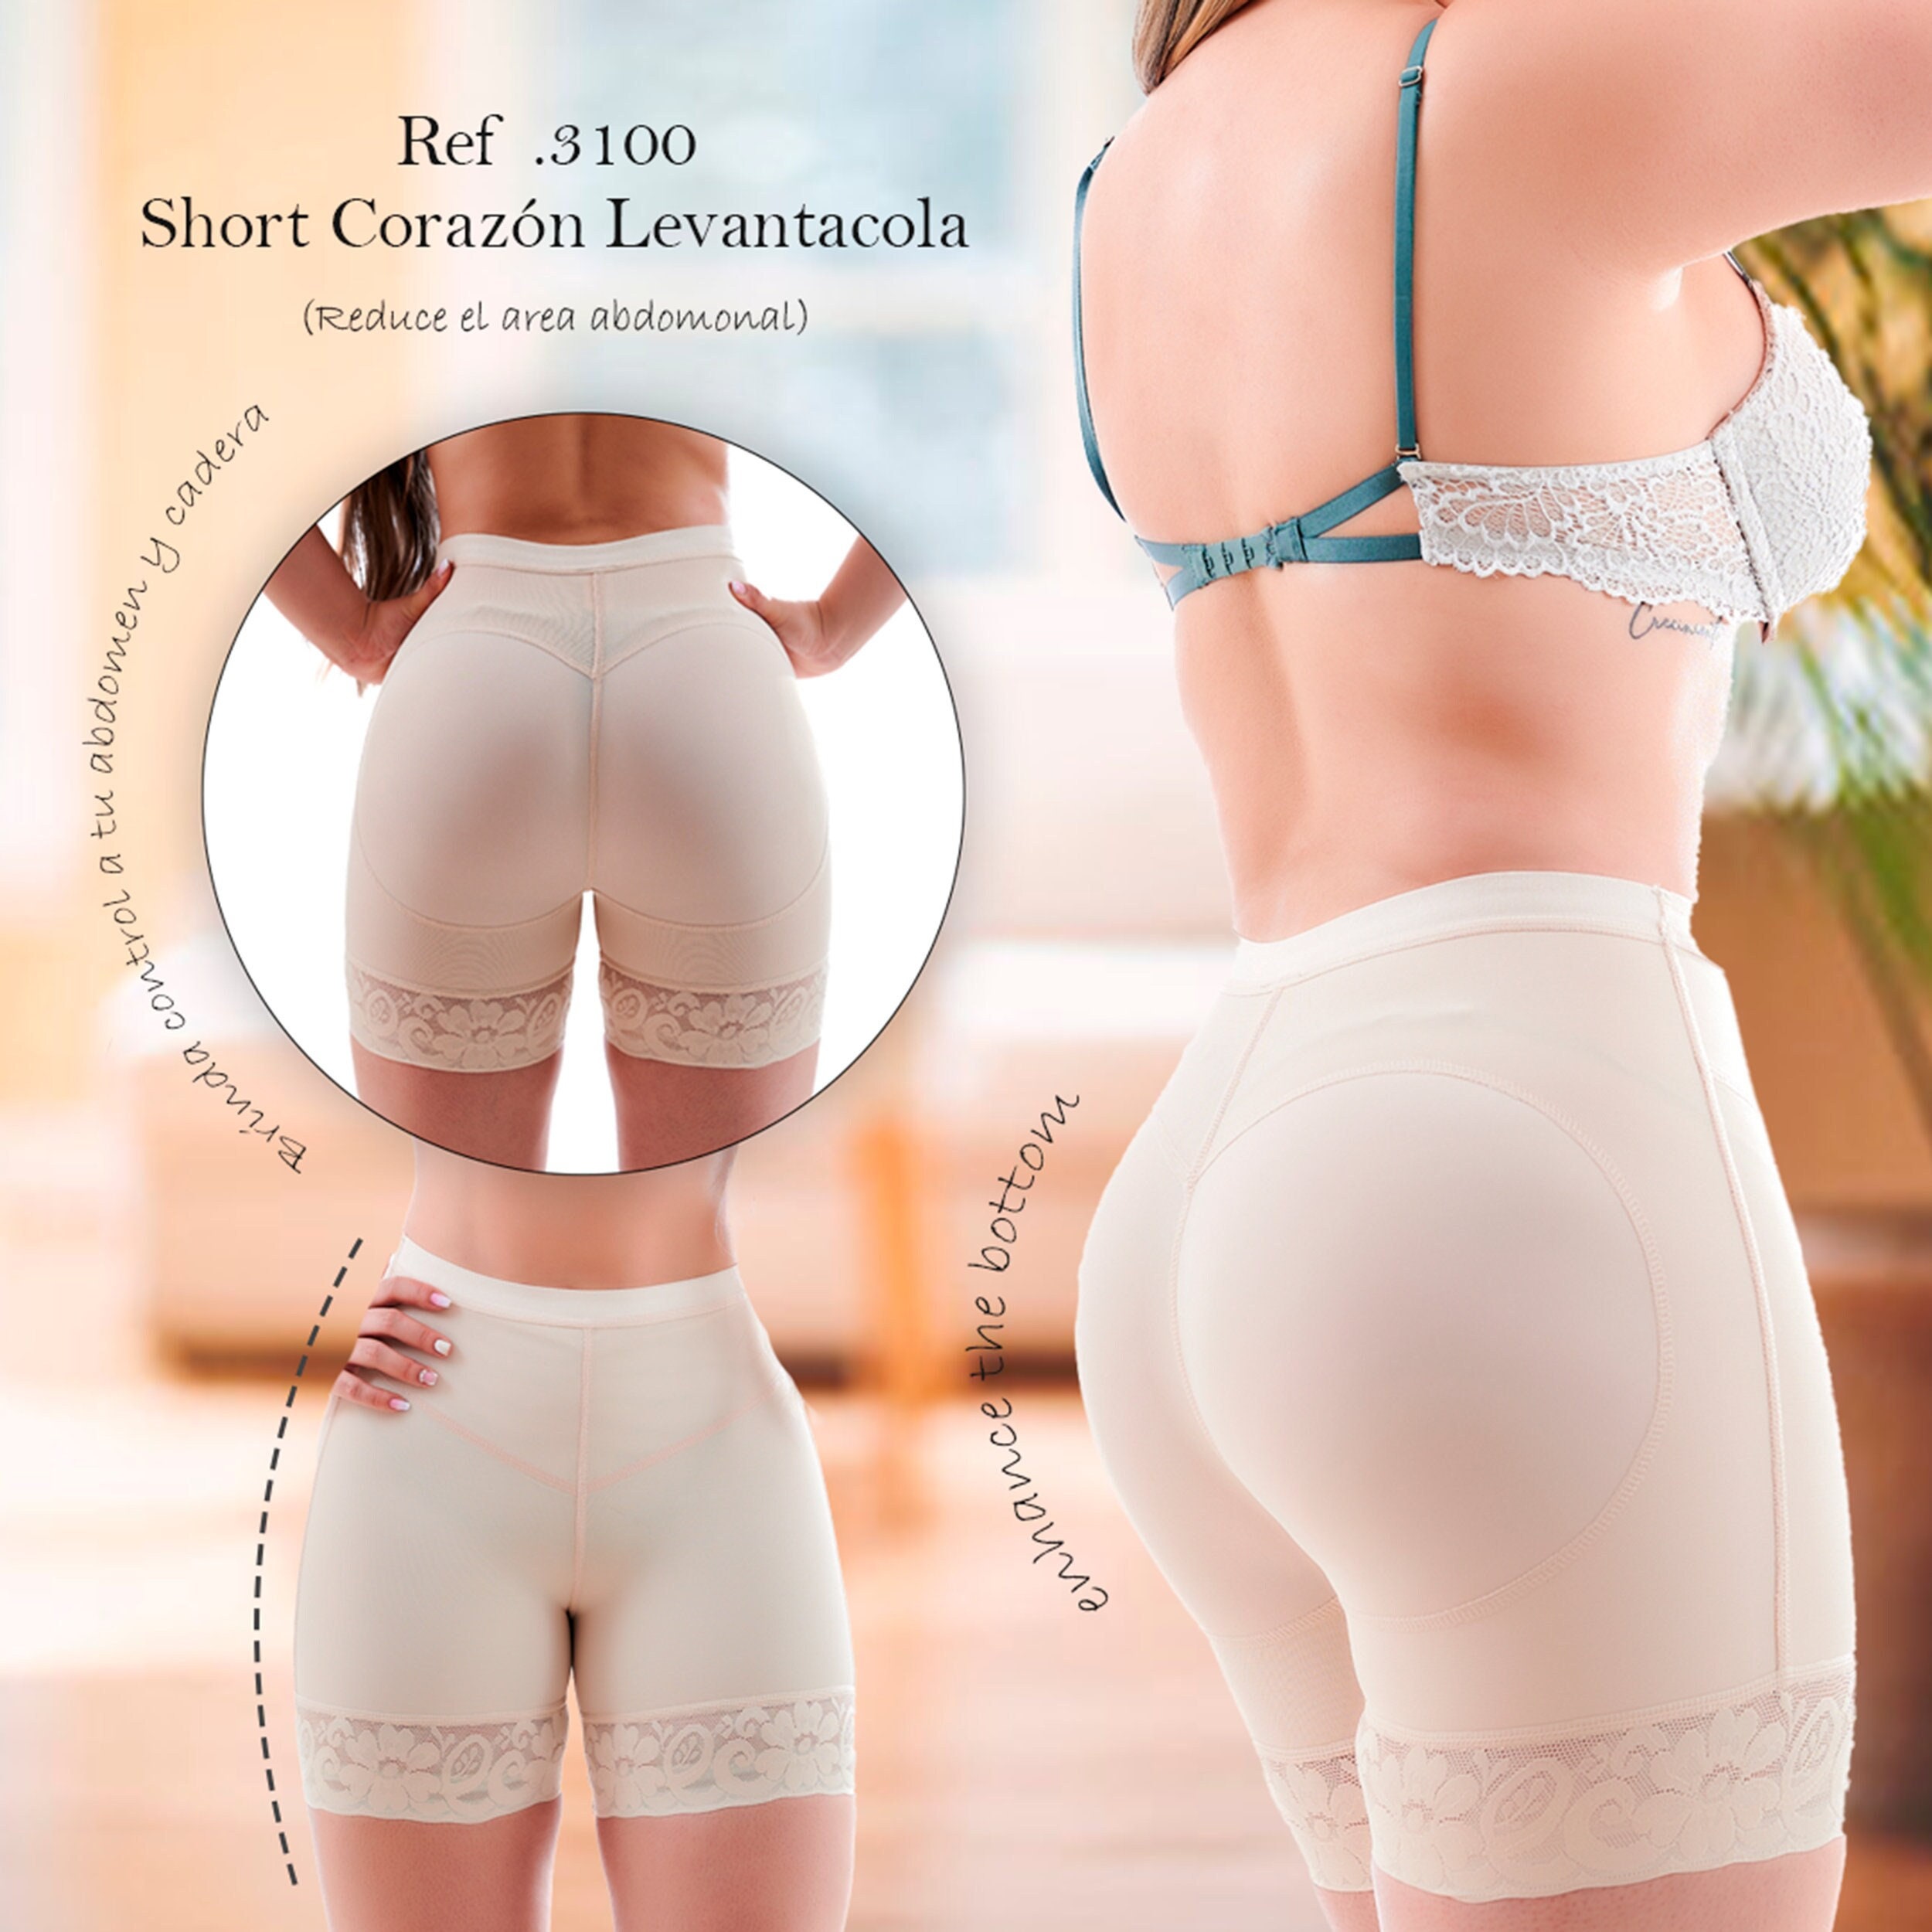 Post Surgery Liposuction BBL Stage 2 Butt Lifter Colombian Fajas Bodysuit  Shorts Garment Fajas Shapewear 